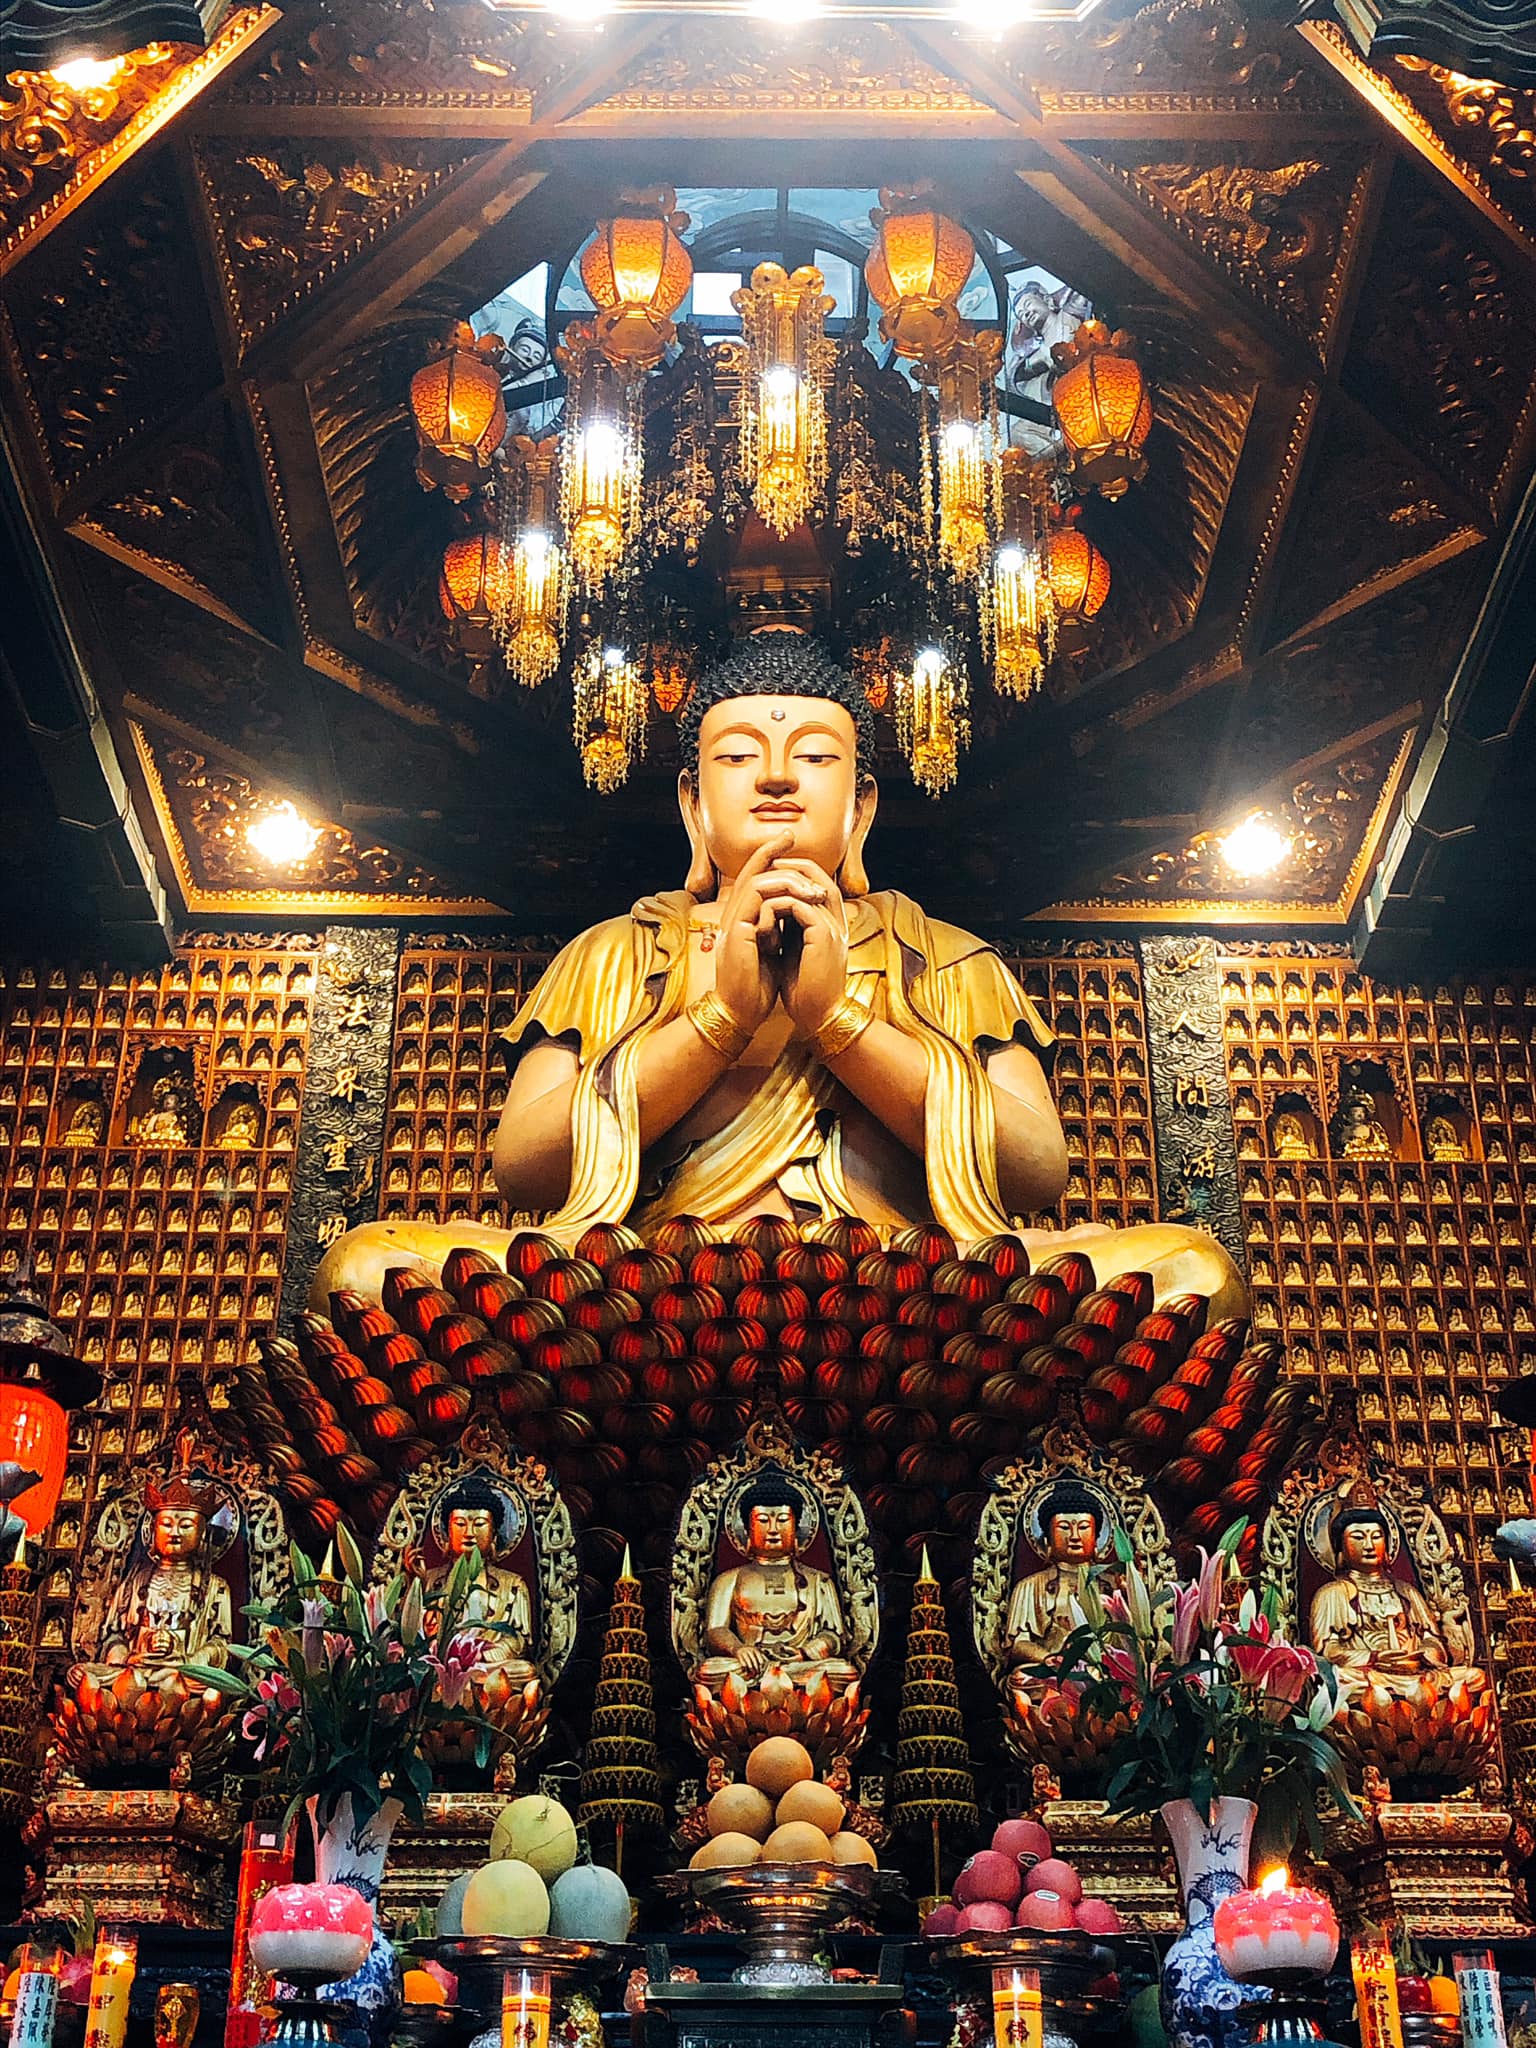 Tại một ngôi chùa Phật, có hơn 10.000 tượng Phật được tỷ mỹ tạo hoá cách điệu từ thủy tinh và đá quý. Trong không gian yên tĩnh của chùa, bạn cảm nhận sự thanh vắng và sự hiền hòa của tôn giáo Phật giáo. Hãy để những tác phẩm nghệ thuật đầy sáng tạo này đưa bạn trở về với chính mình.